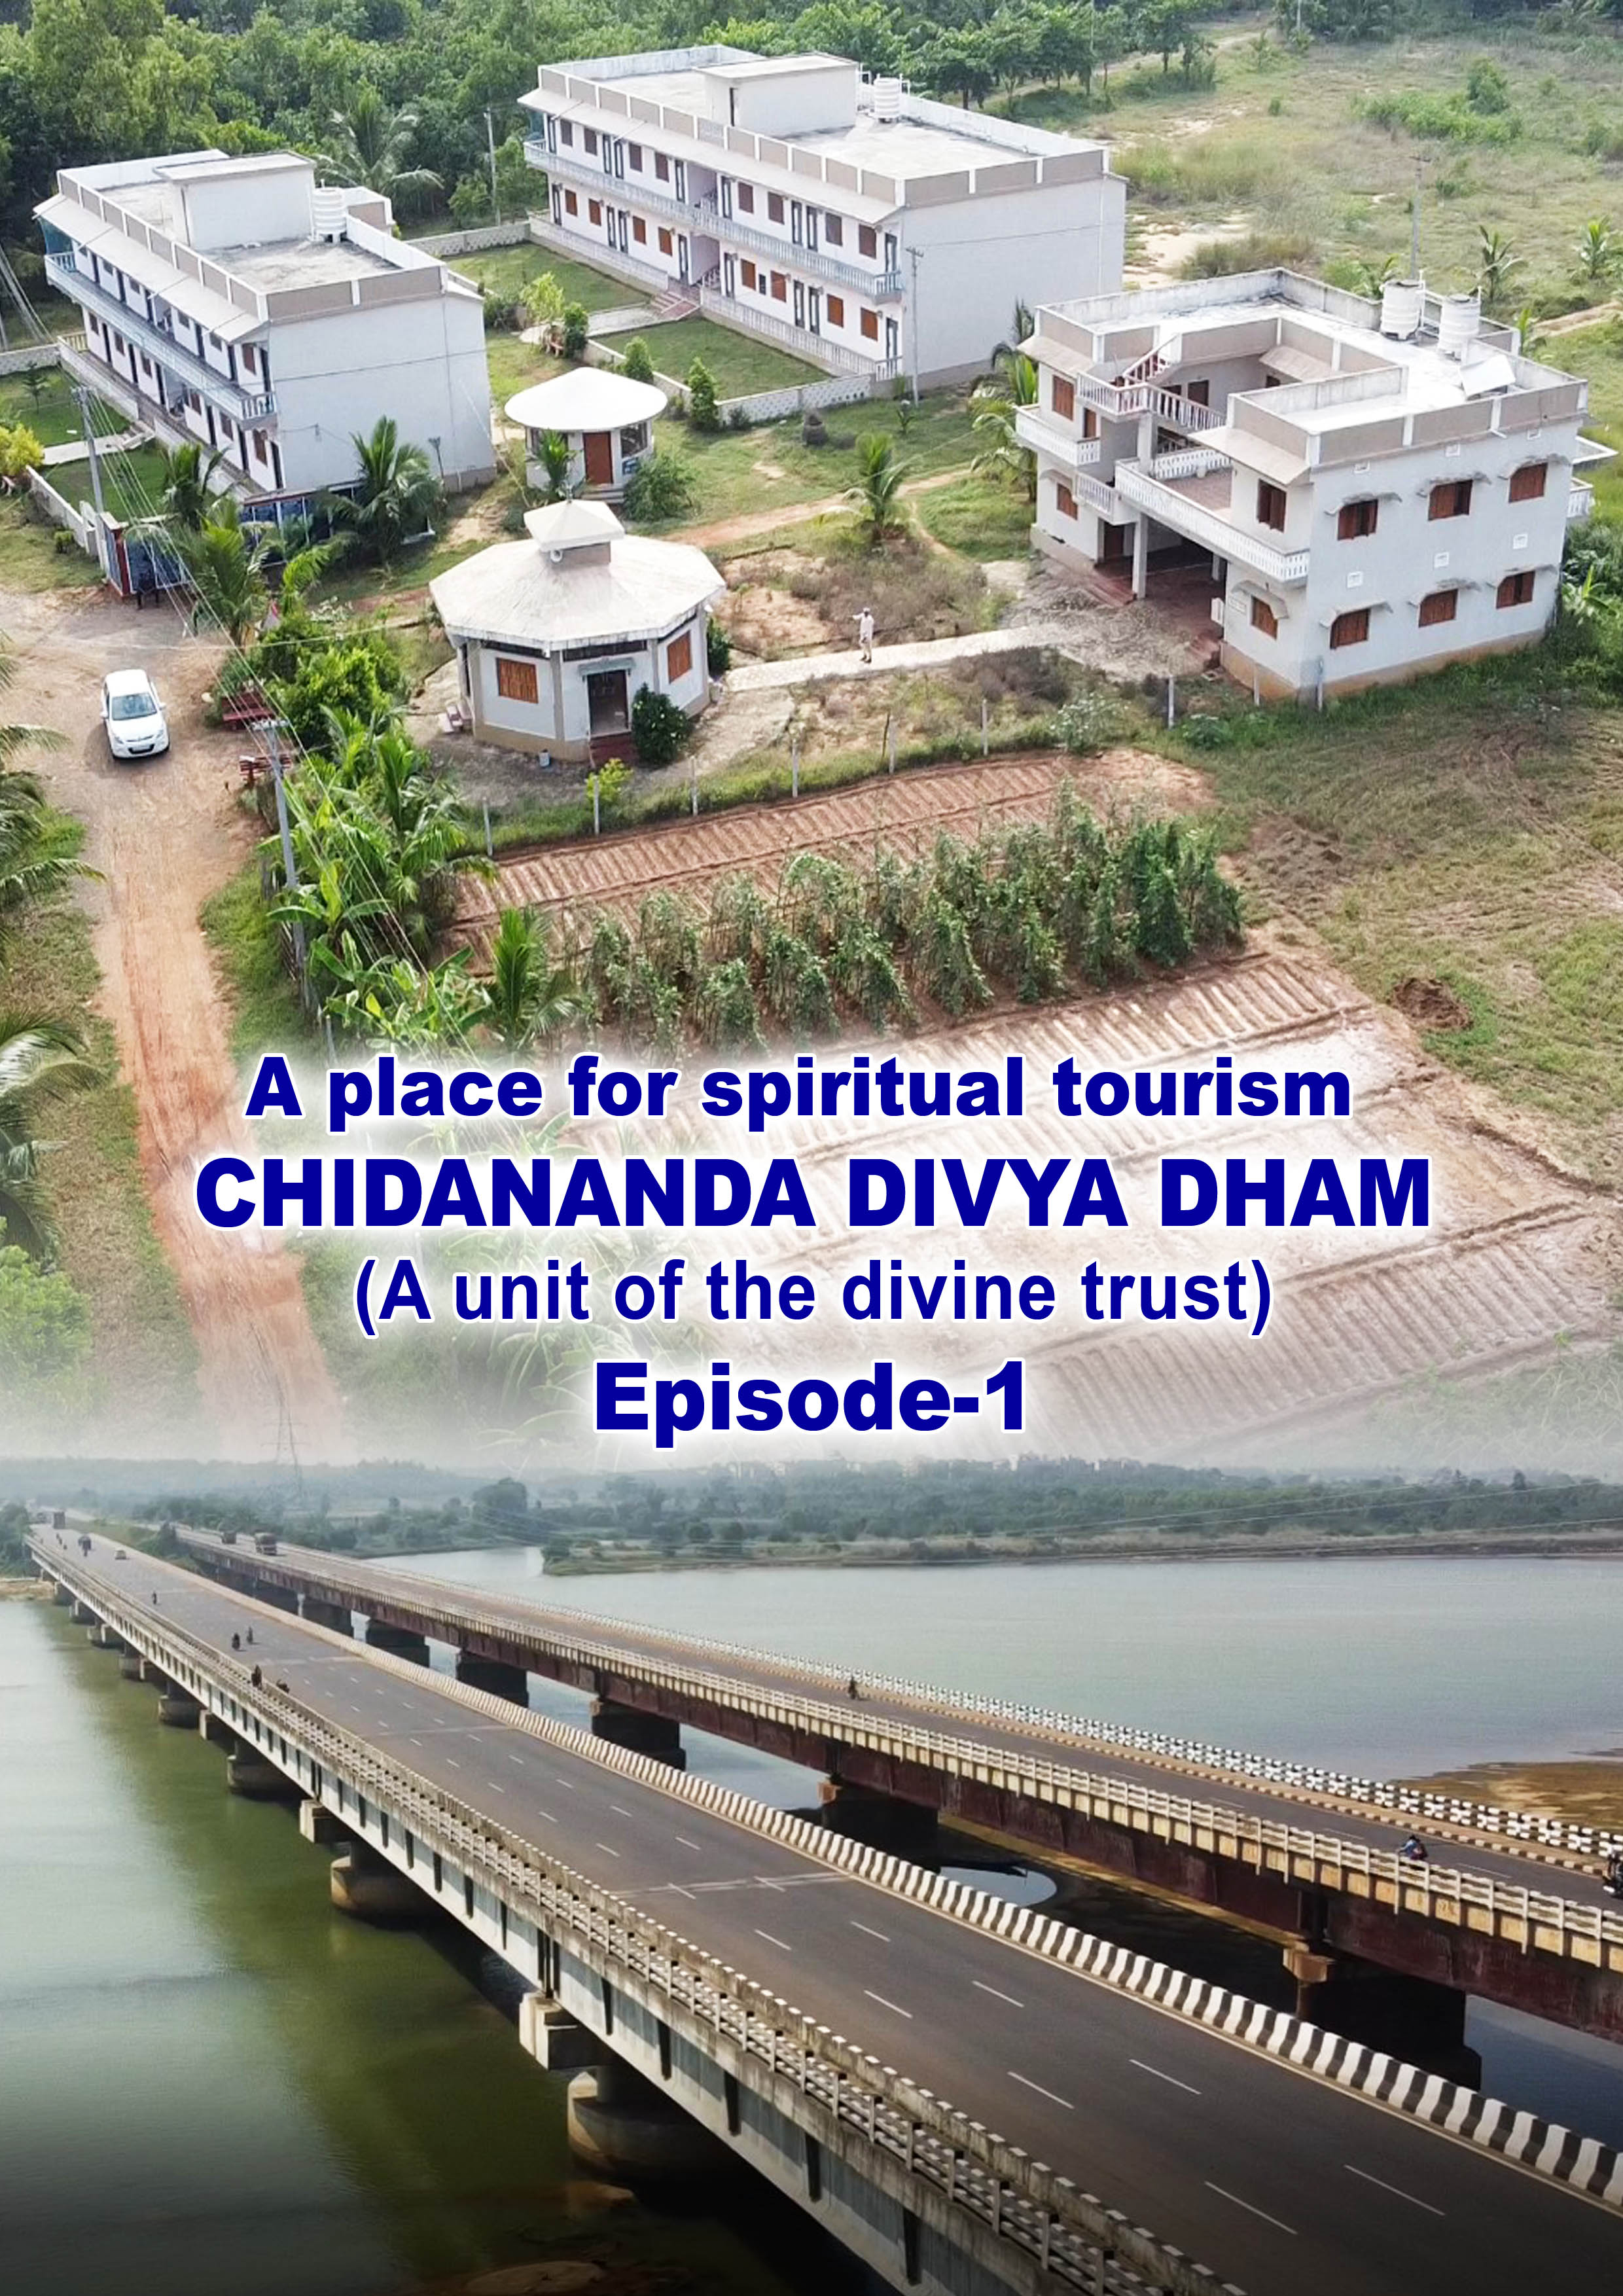 Chidananda Divyadham